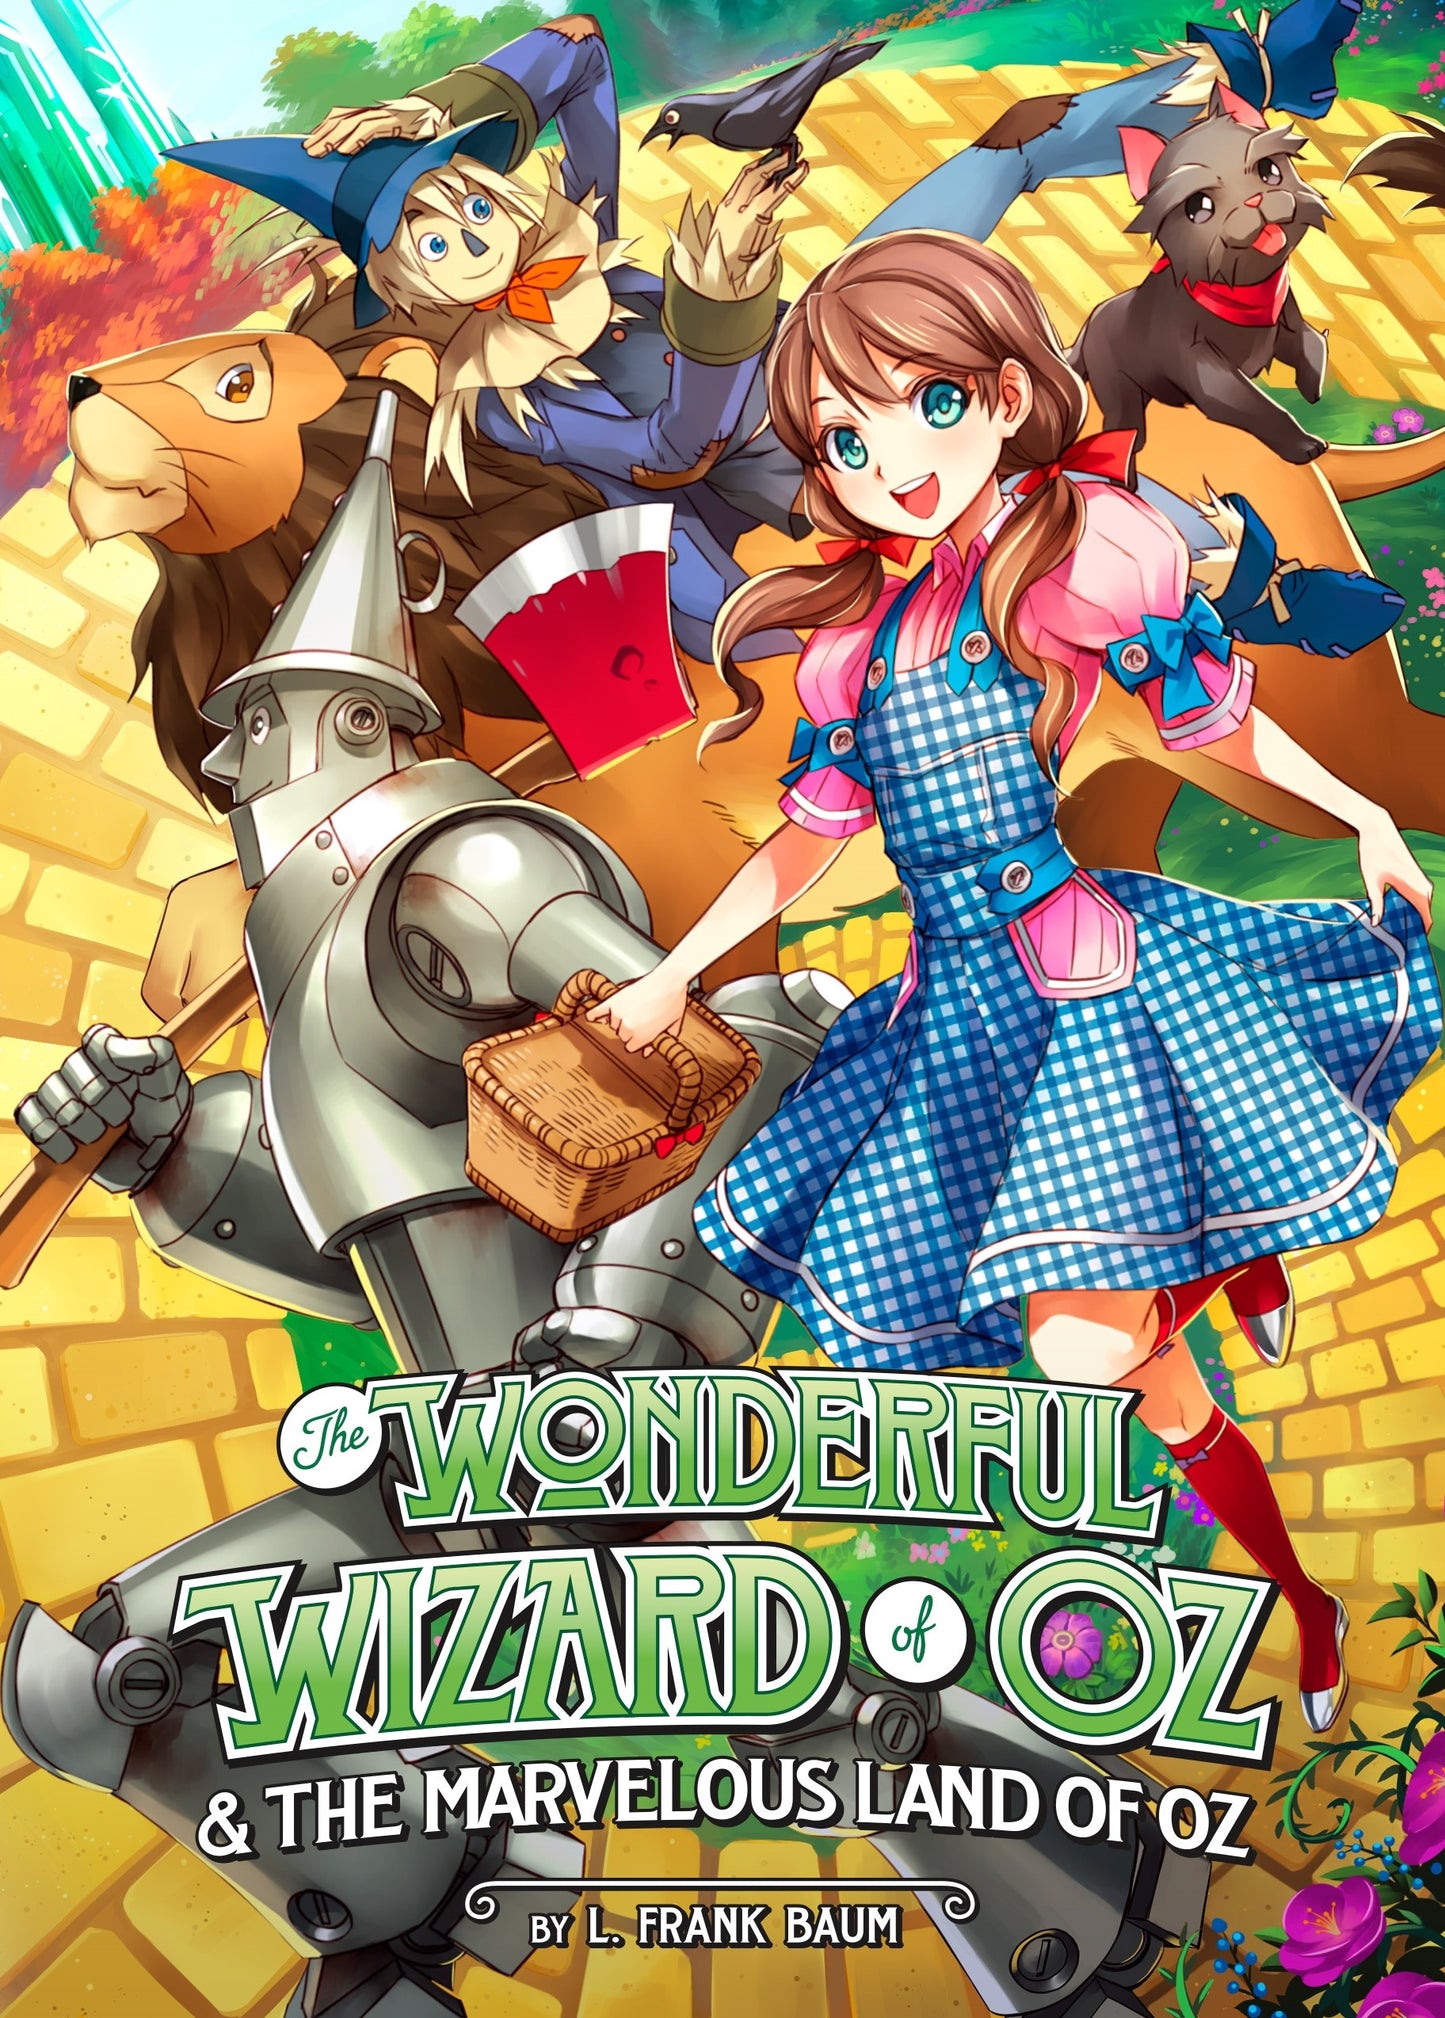 The Wonderful Wizard of Oz & The Marvelous Land of Oz (Illustrated Novel) - Manga Warehouse